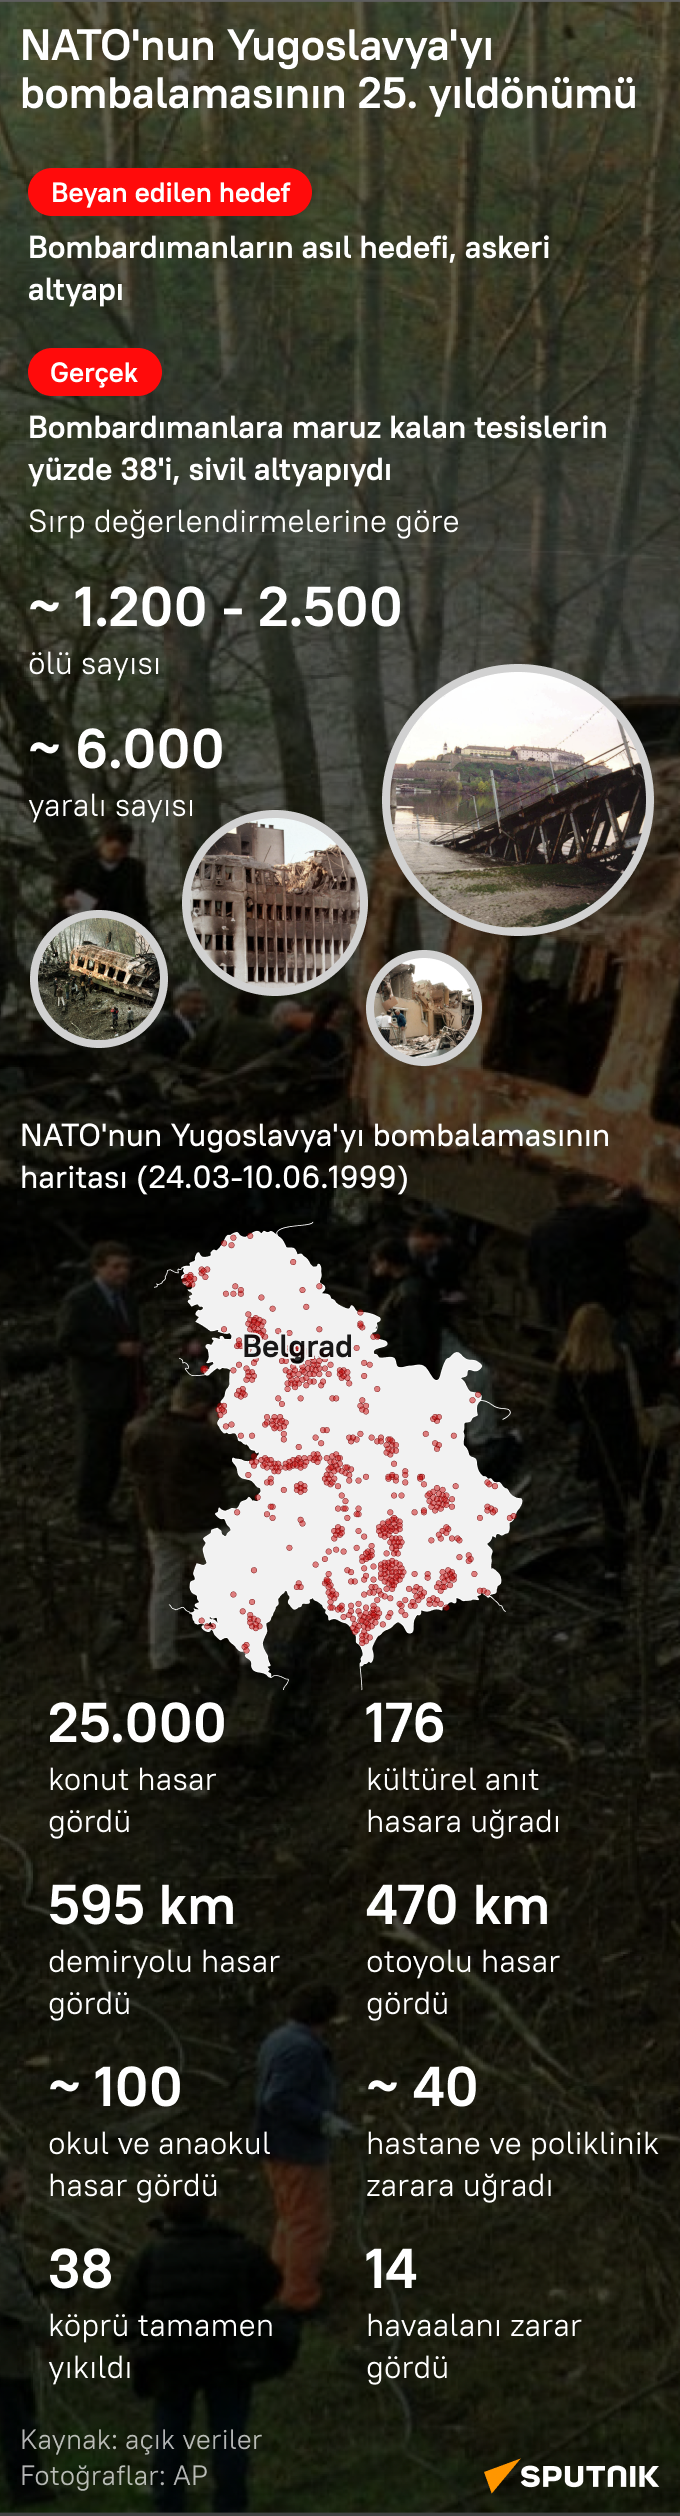 NATO'nun Yugoslavya'yı bombalamasının üzerinden 25 yıl geçti  - Sputnik Türkiye